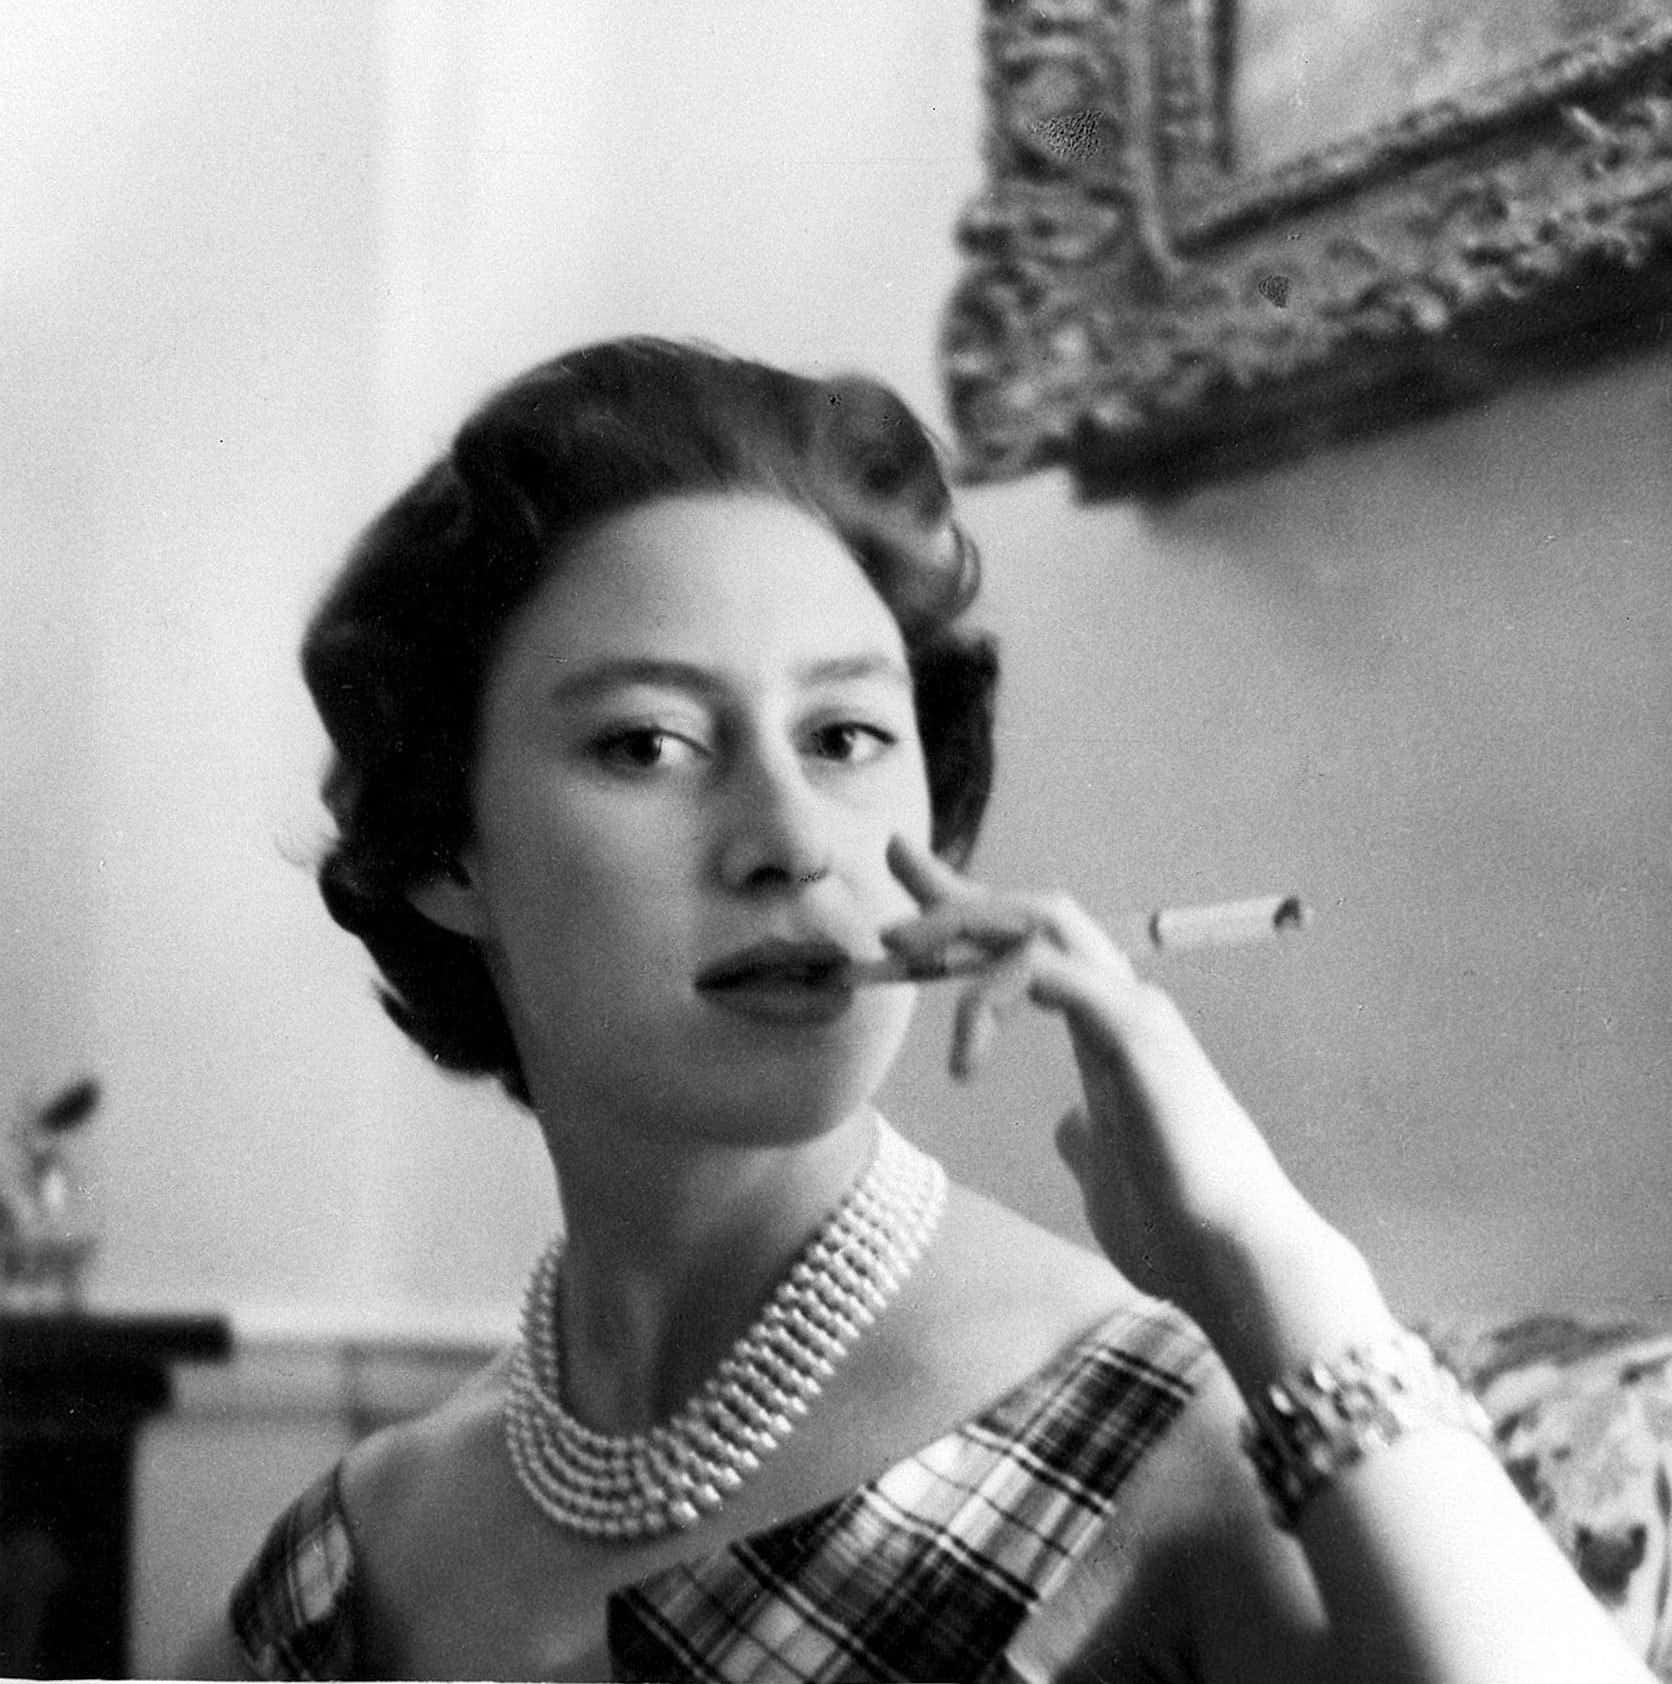 Elizabeth Ii Smoking A Cigarette In A Plaid Dress